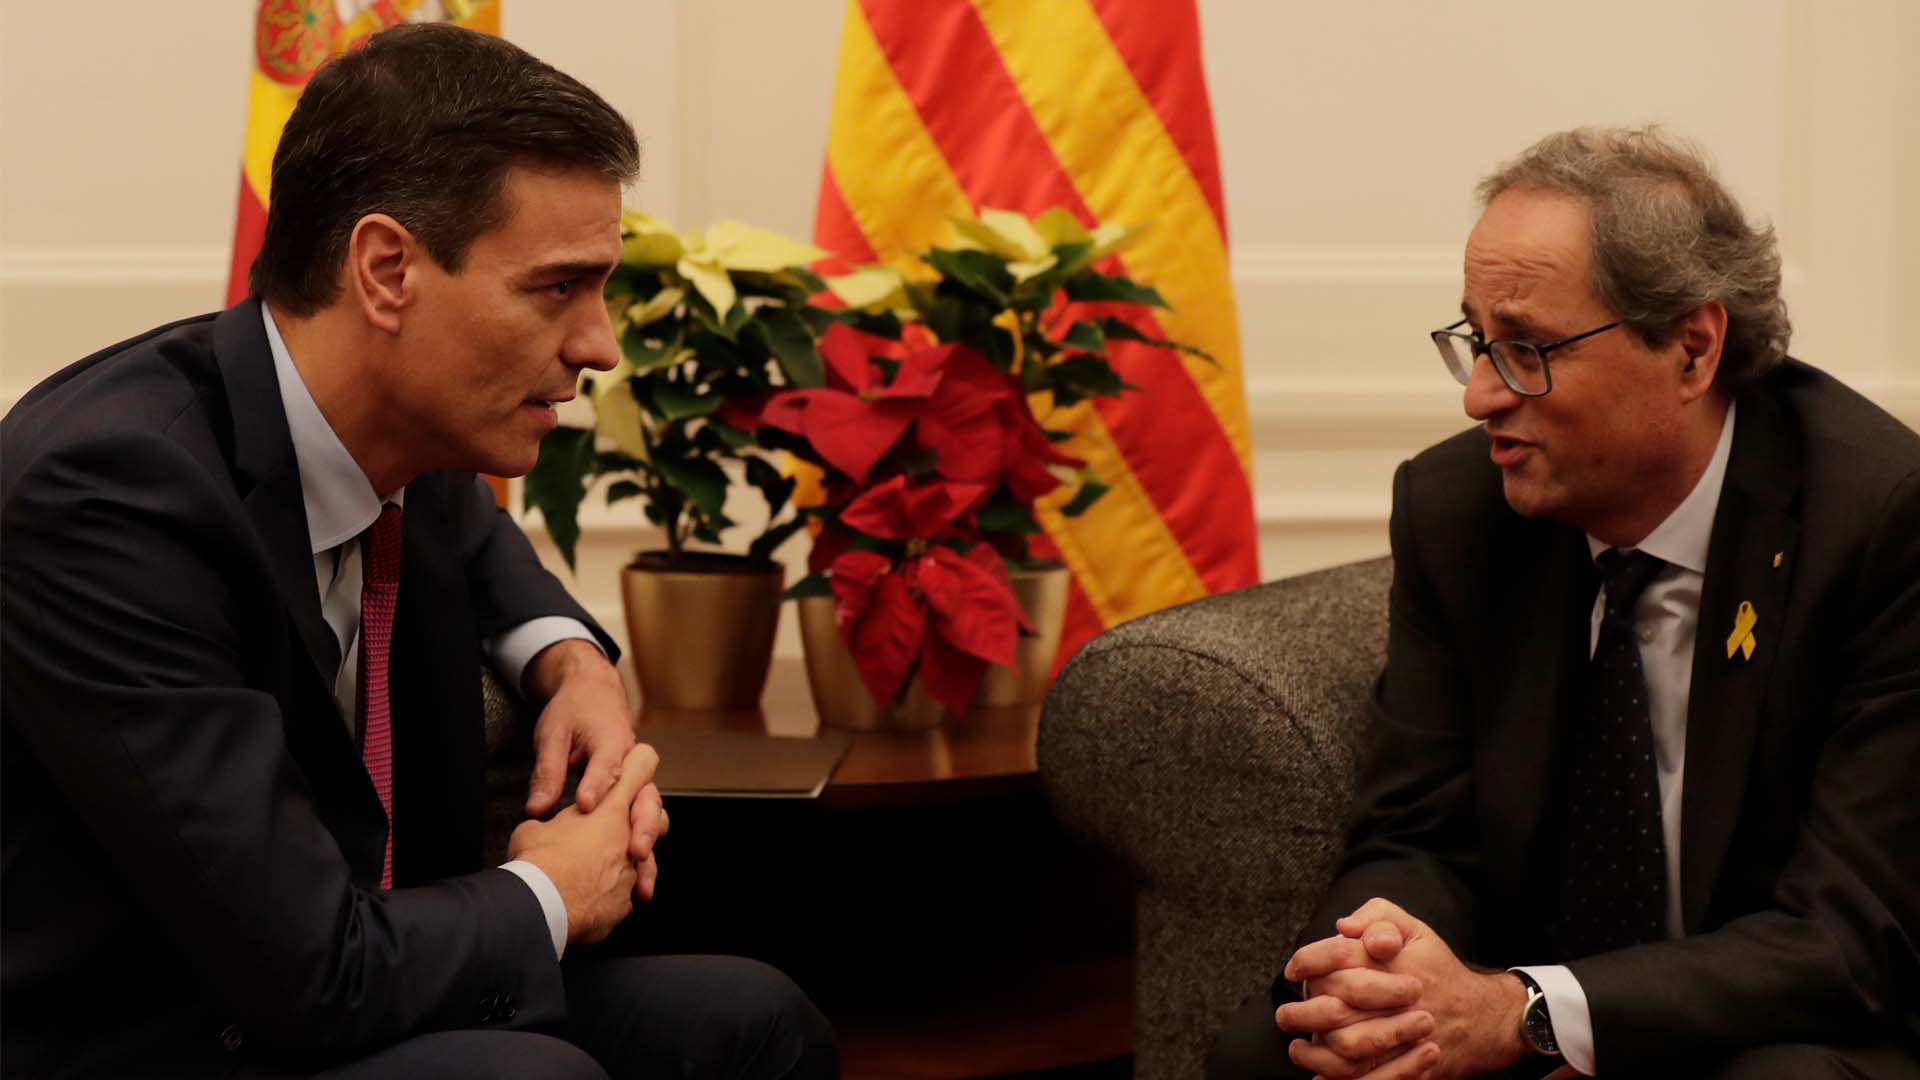 Sánchez, dispuesto a reunirse con Torra cuando haya Gobierno para "resolver la crisis política" en Cataluña